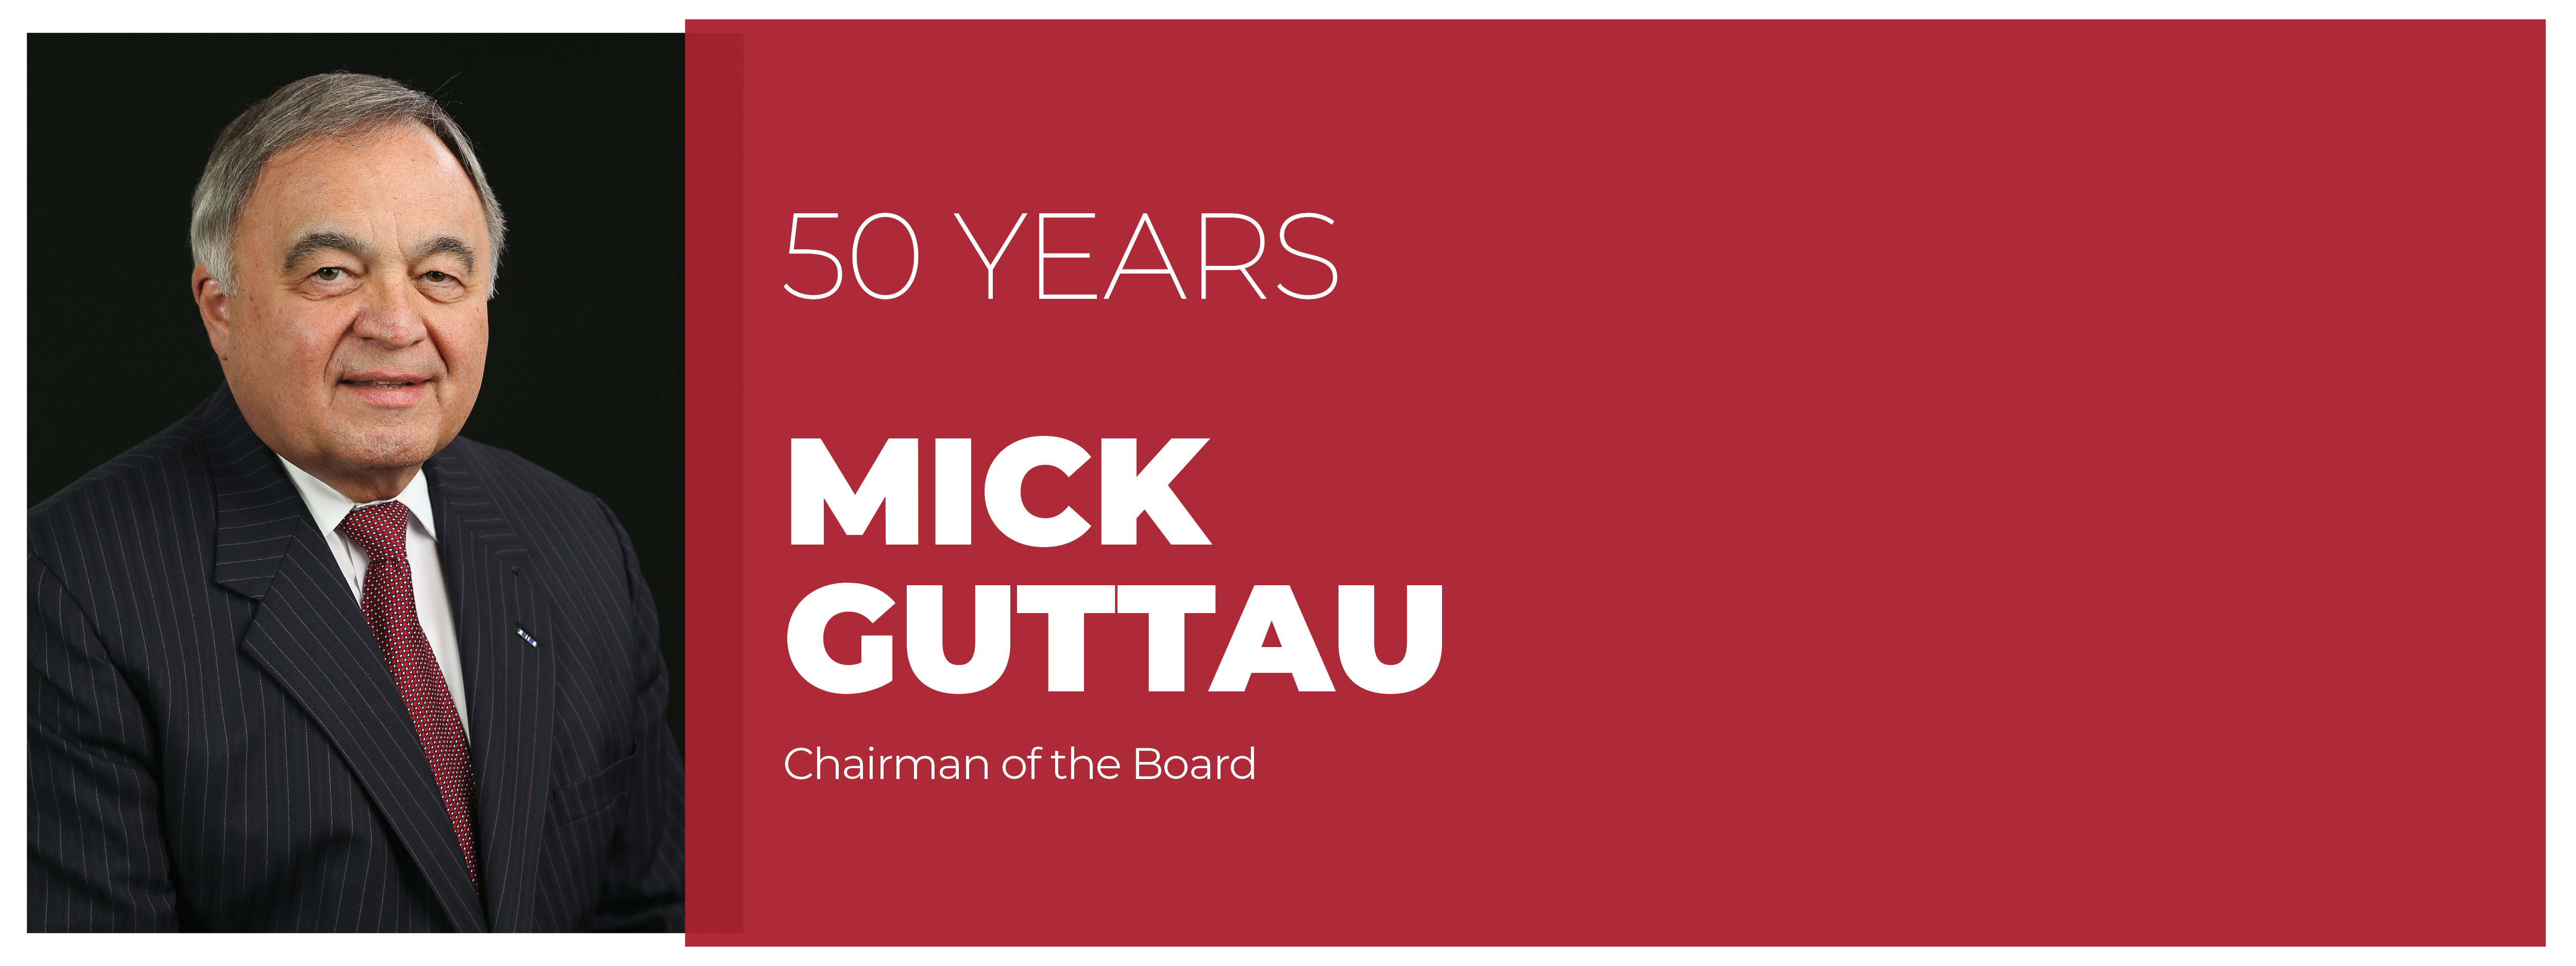 50 years, Mick Guttau